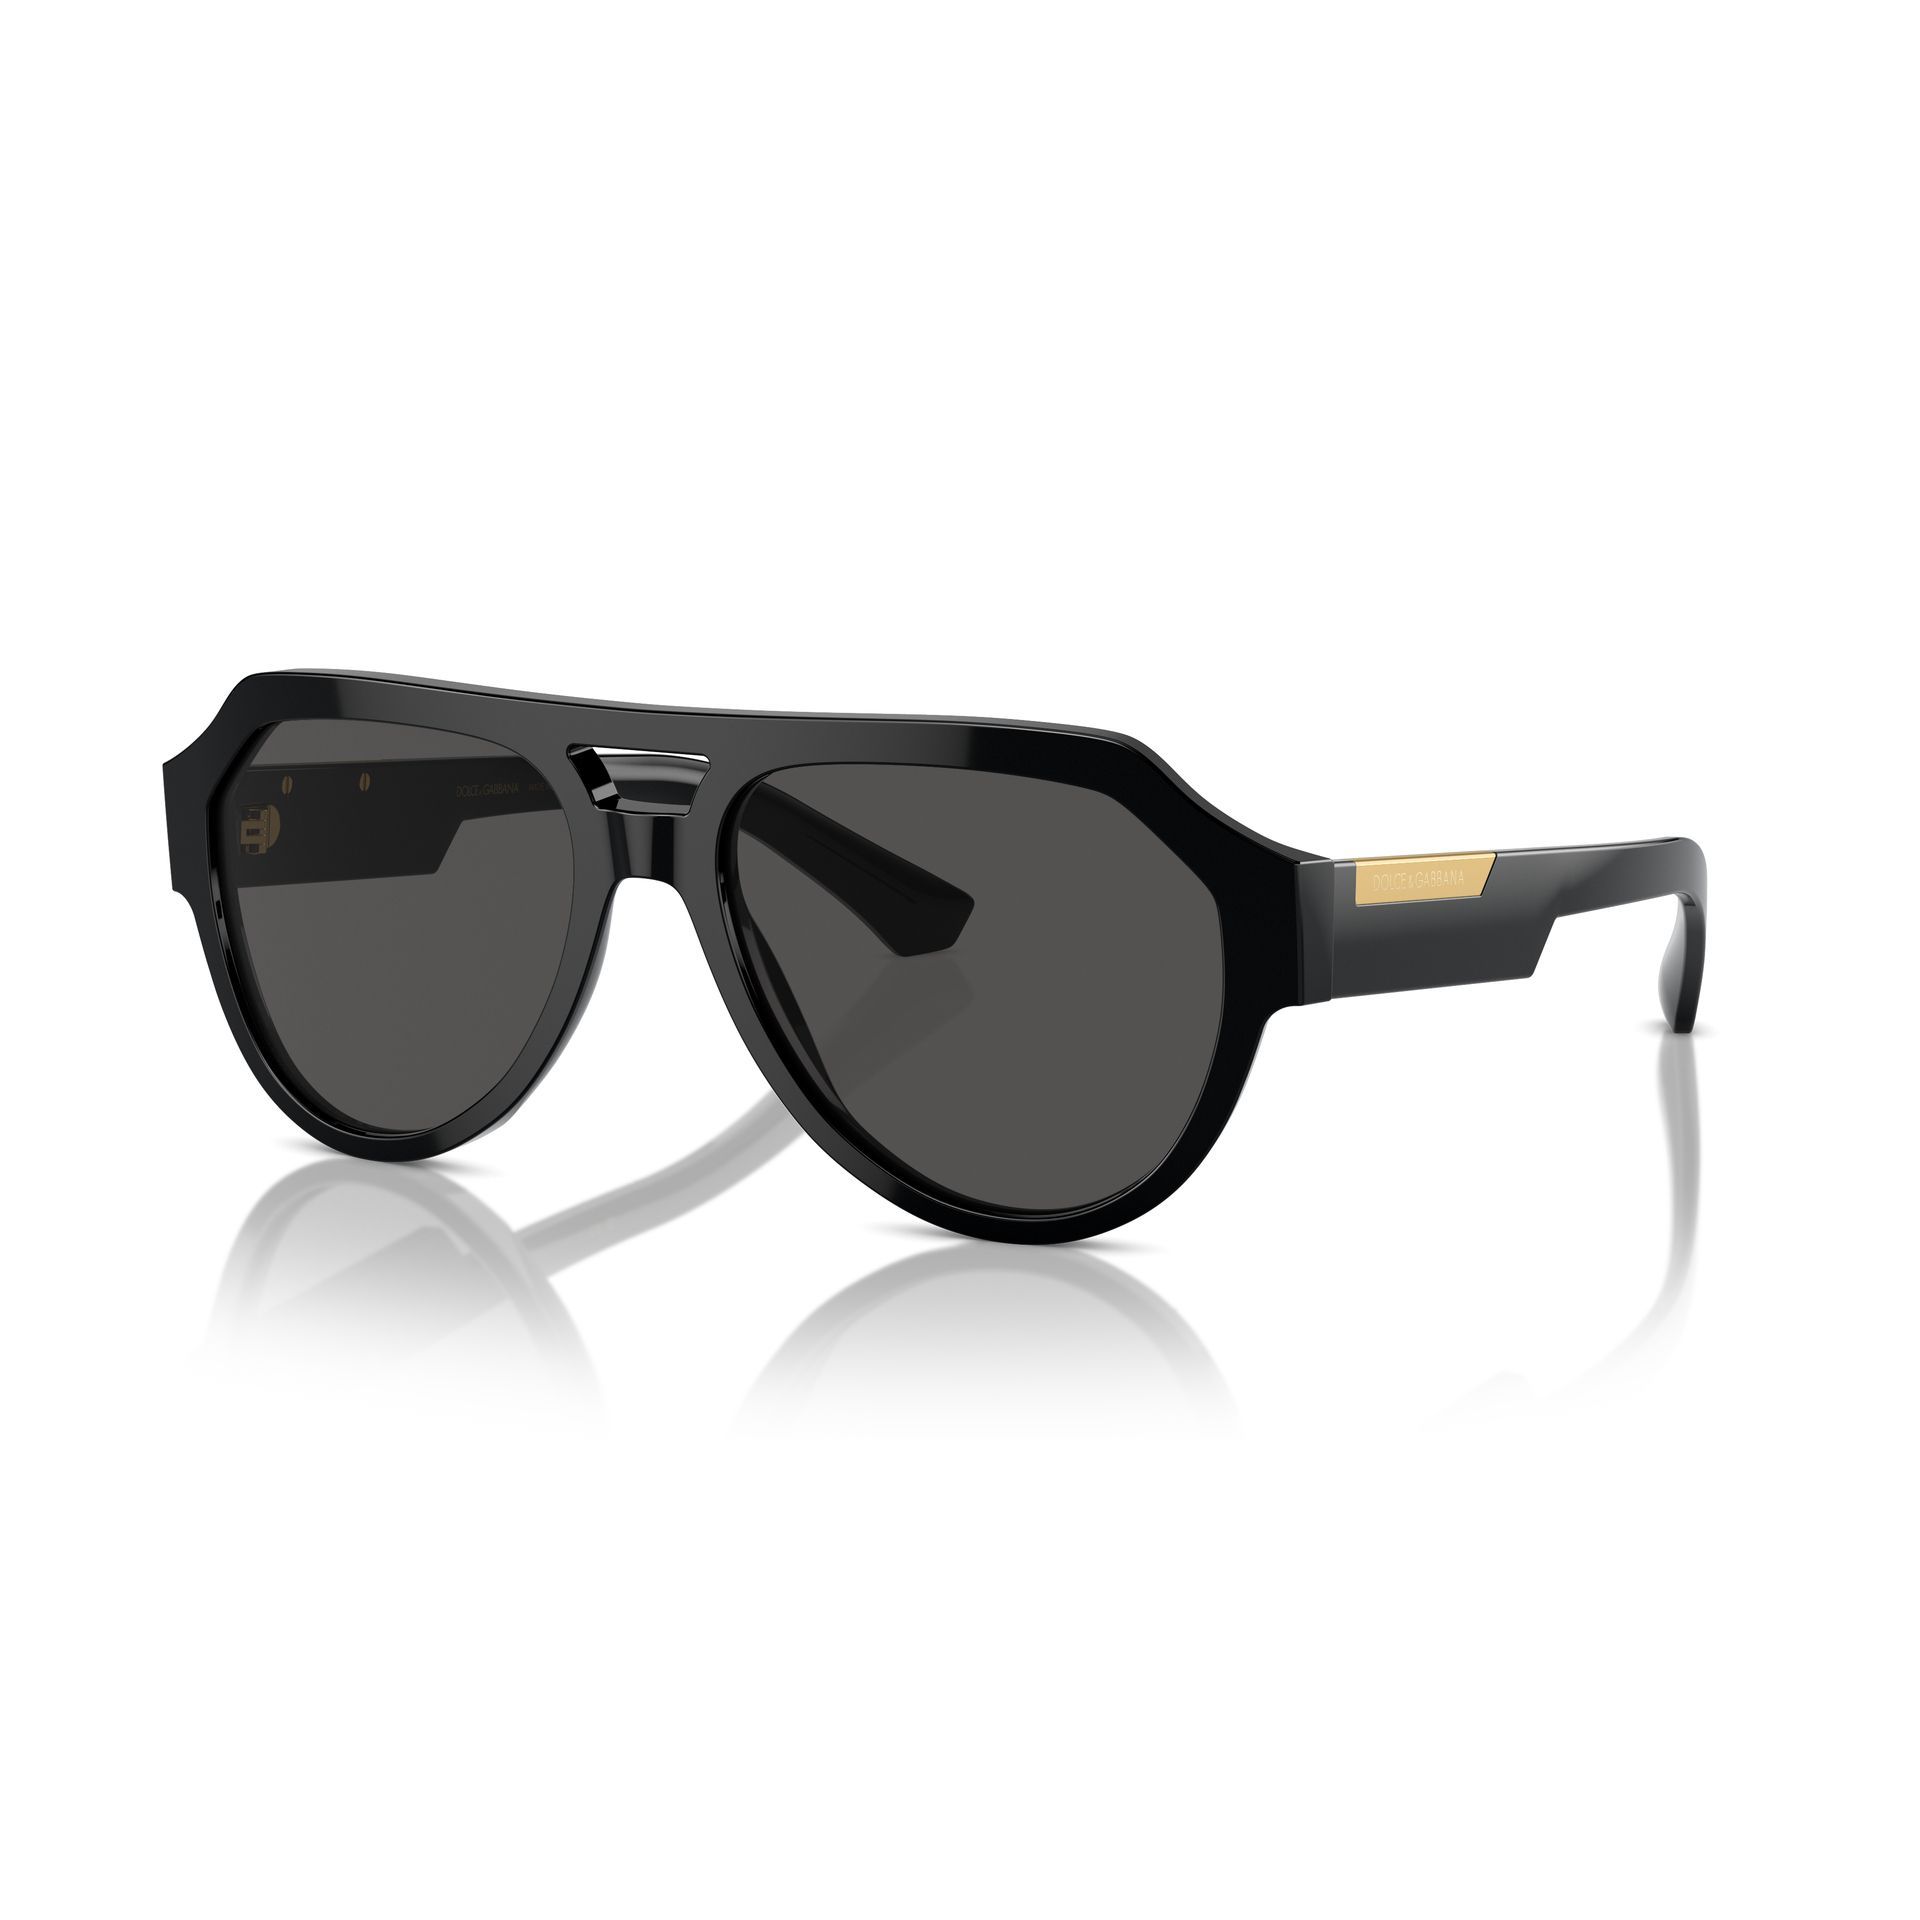 0DG4466 Pilot Sunglasses 501 87 - size 56